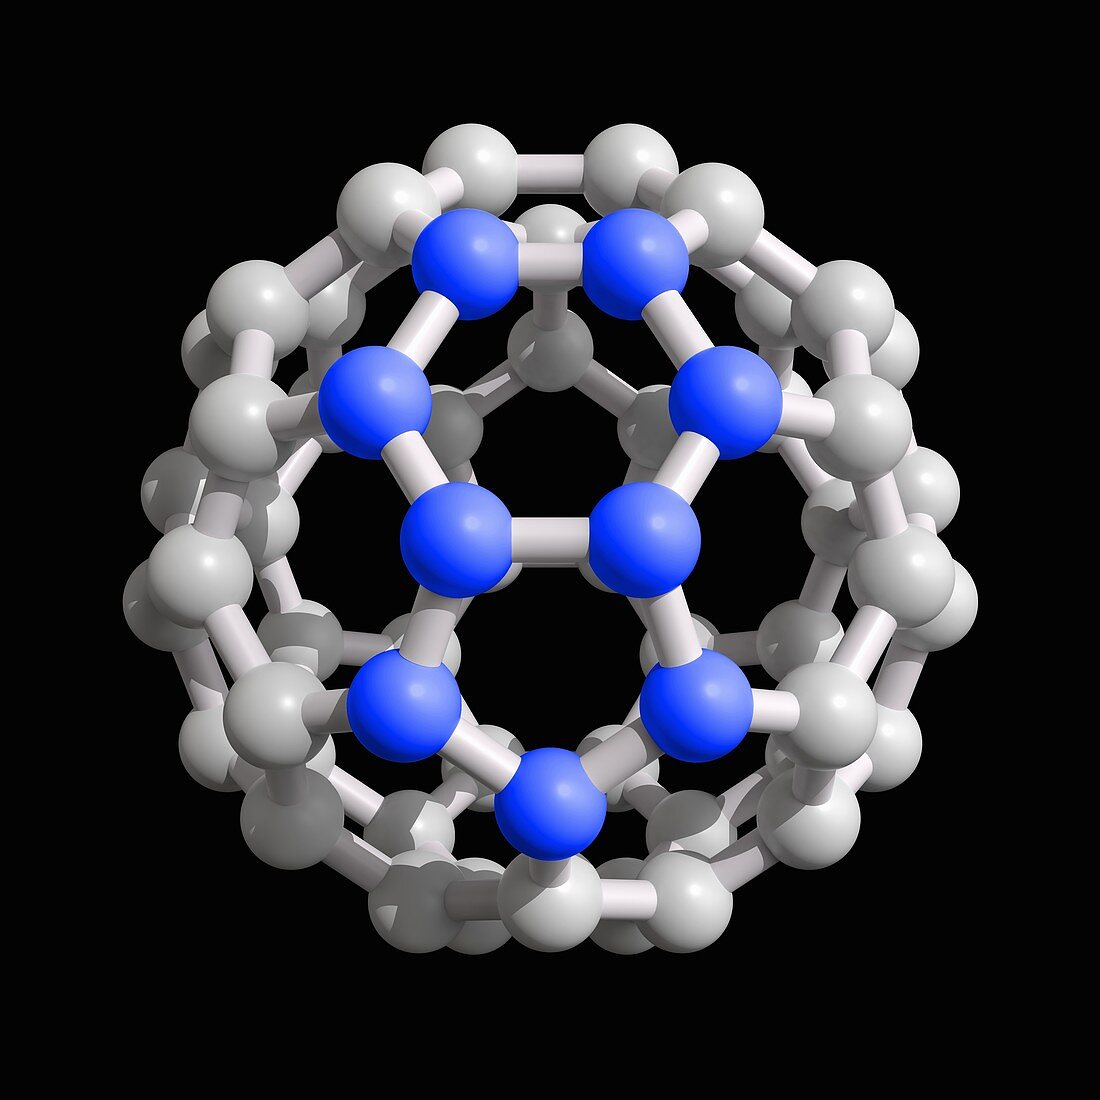 Buckyball C60 molecule, illustration